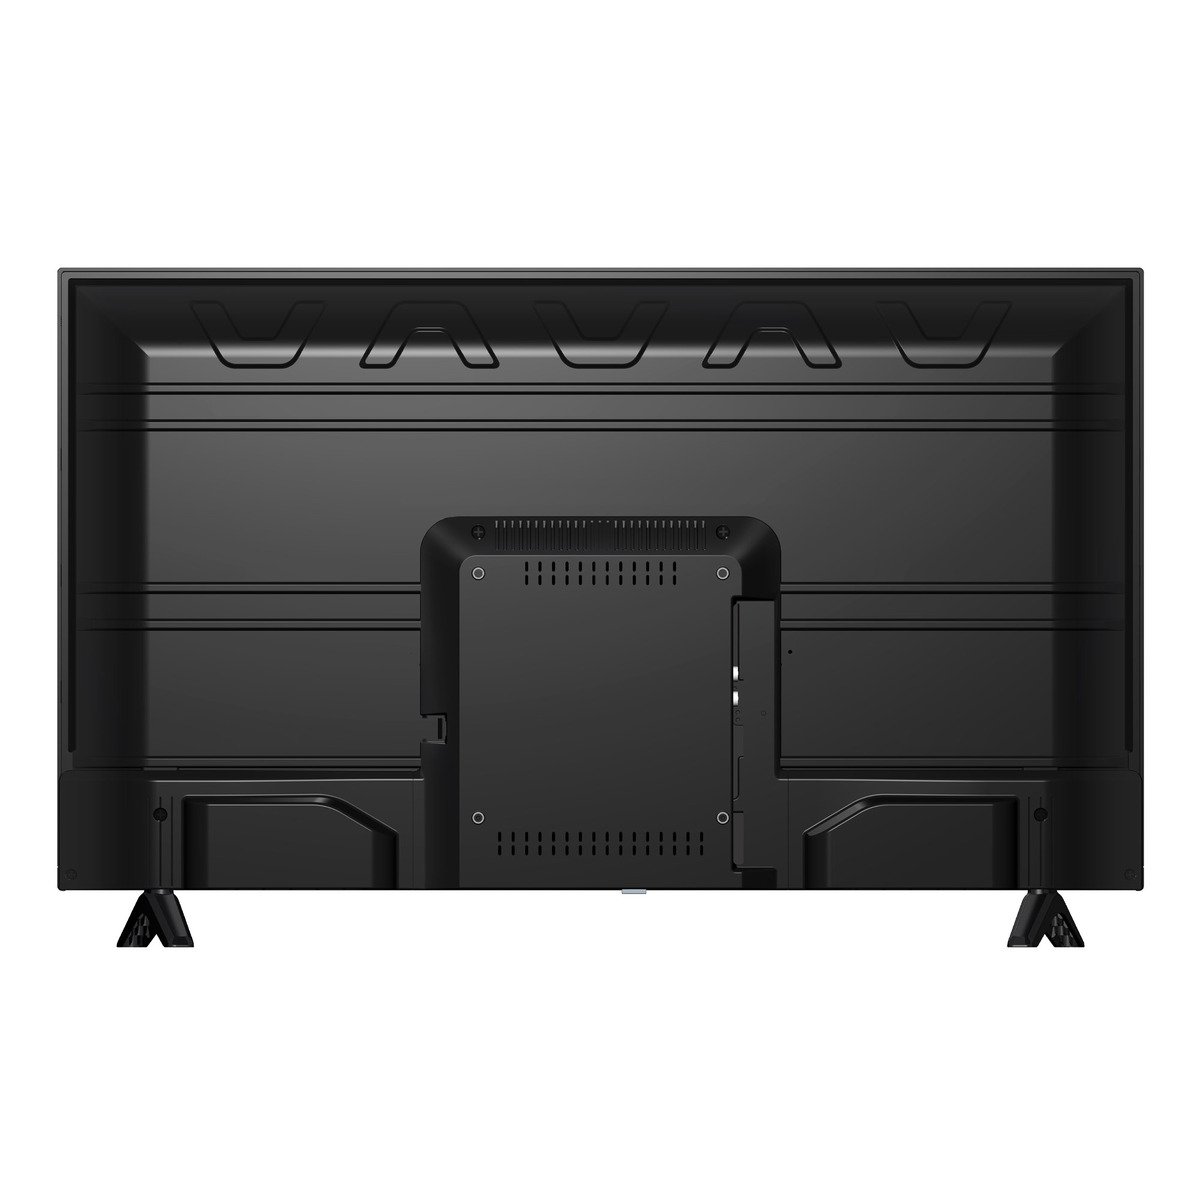 Ikon 40 inches HD Smart LED TV, Black, IK-VS40